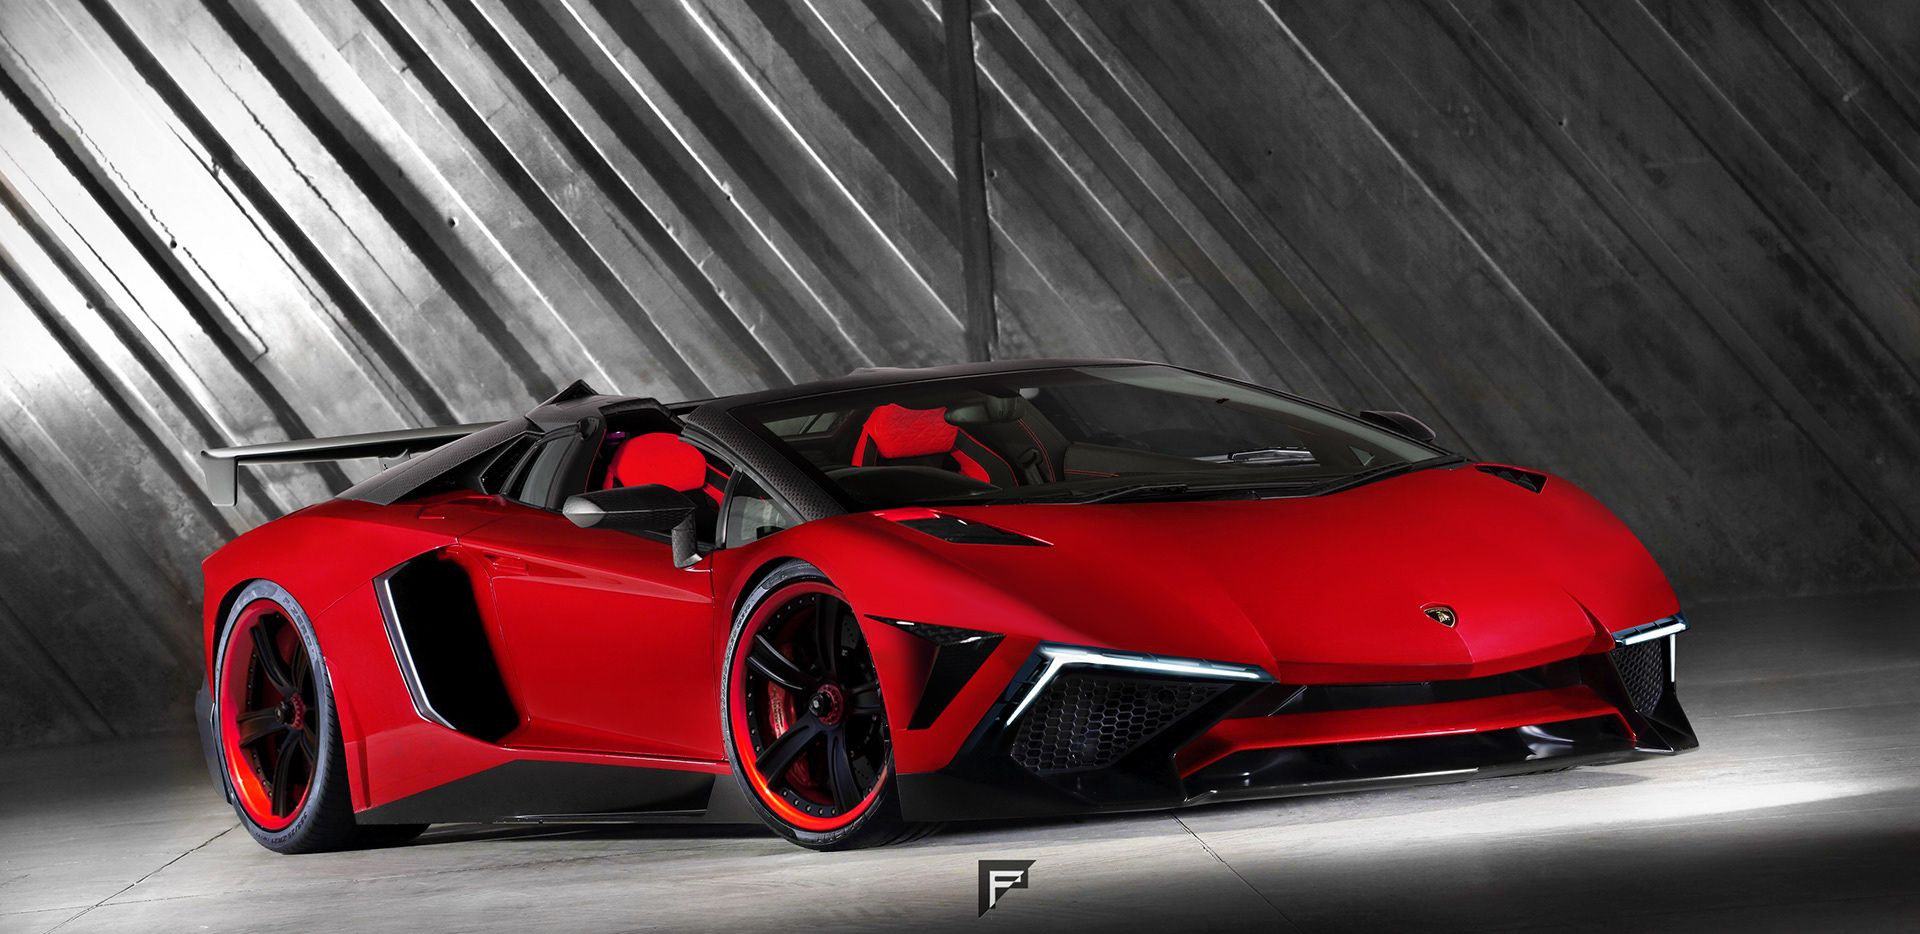 A closer look at the wild Lamborghini Terzo Millennio